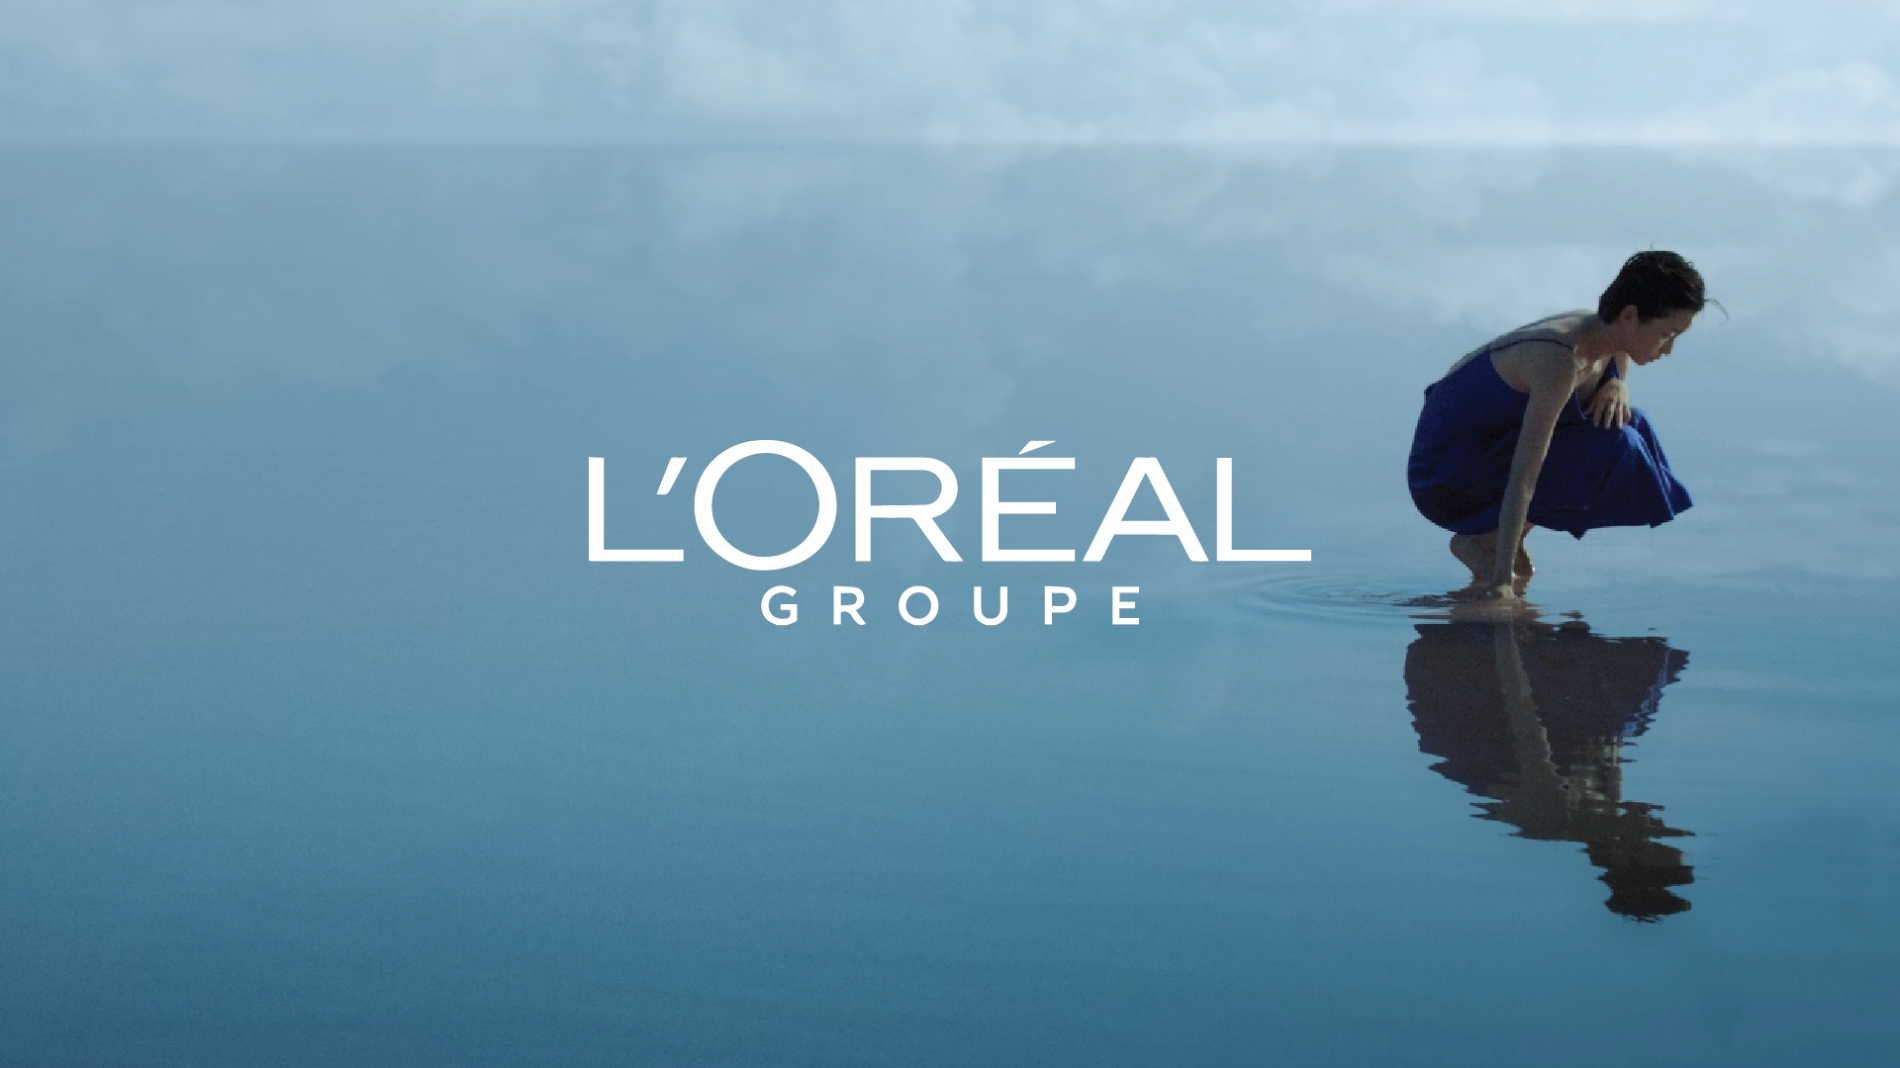 [생활경제 이슈] 로레알 그룹, ‘세상을 움직이는 아름다움’ 캠페인 영상 공개 外